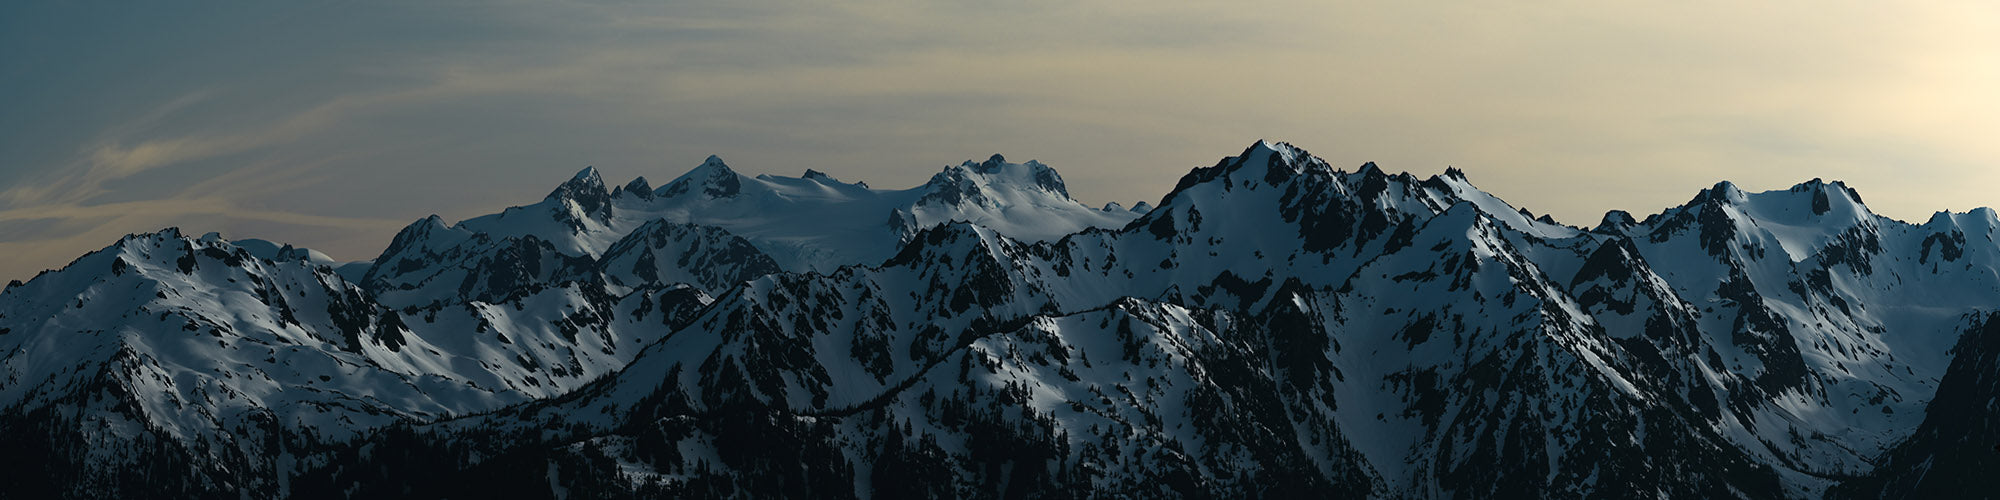 Olympic Mountains taken from Hurricane Ridge